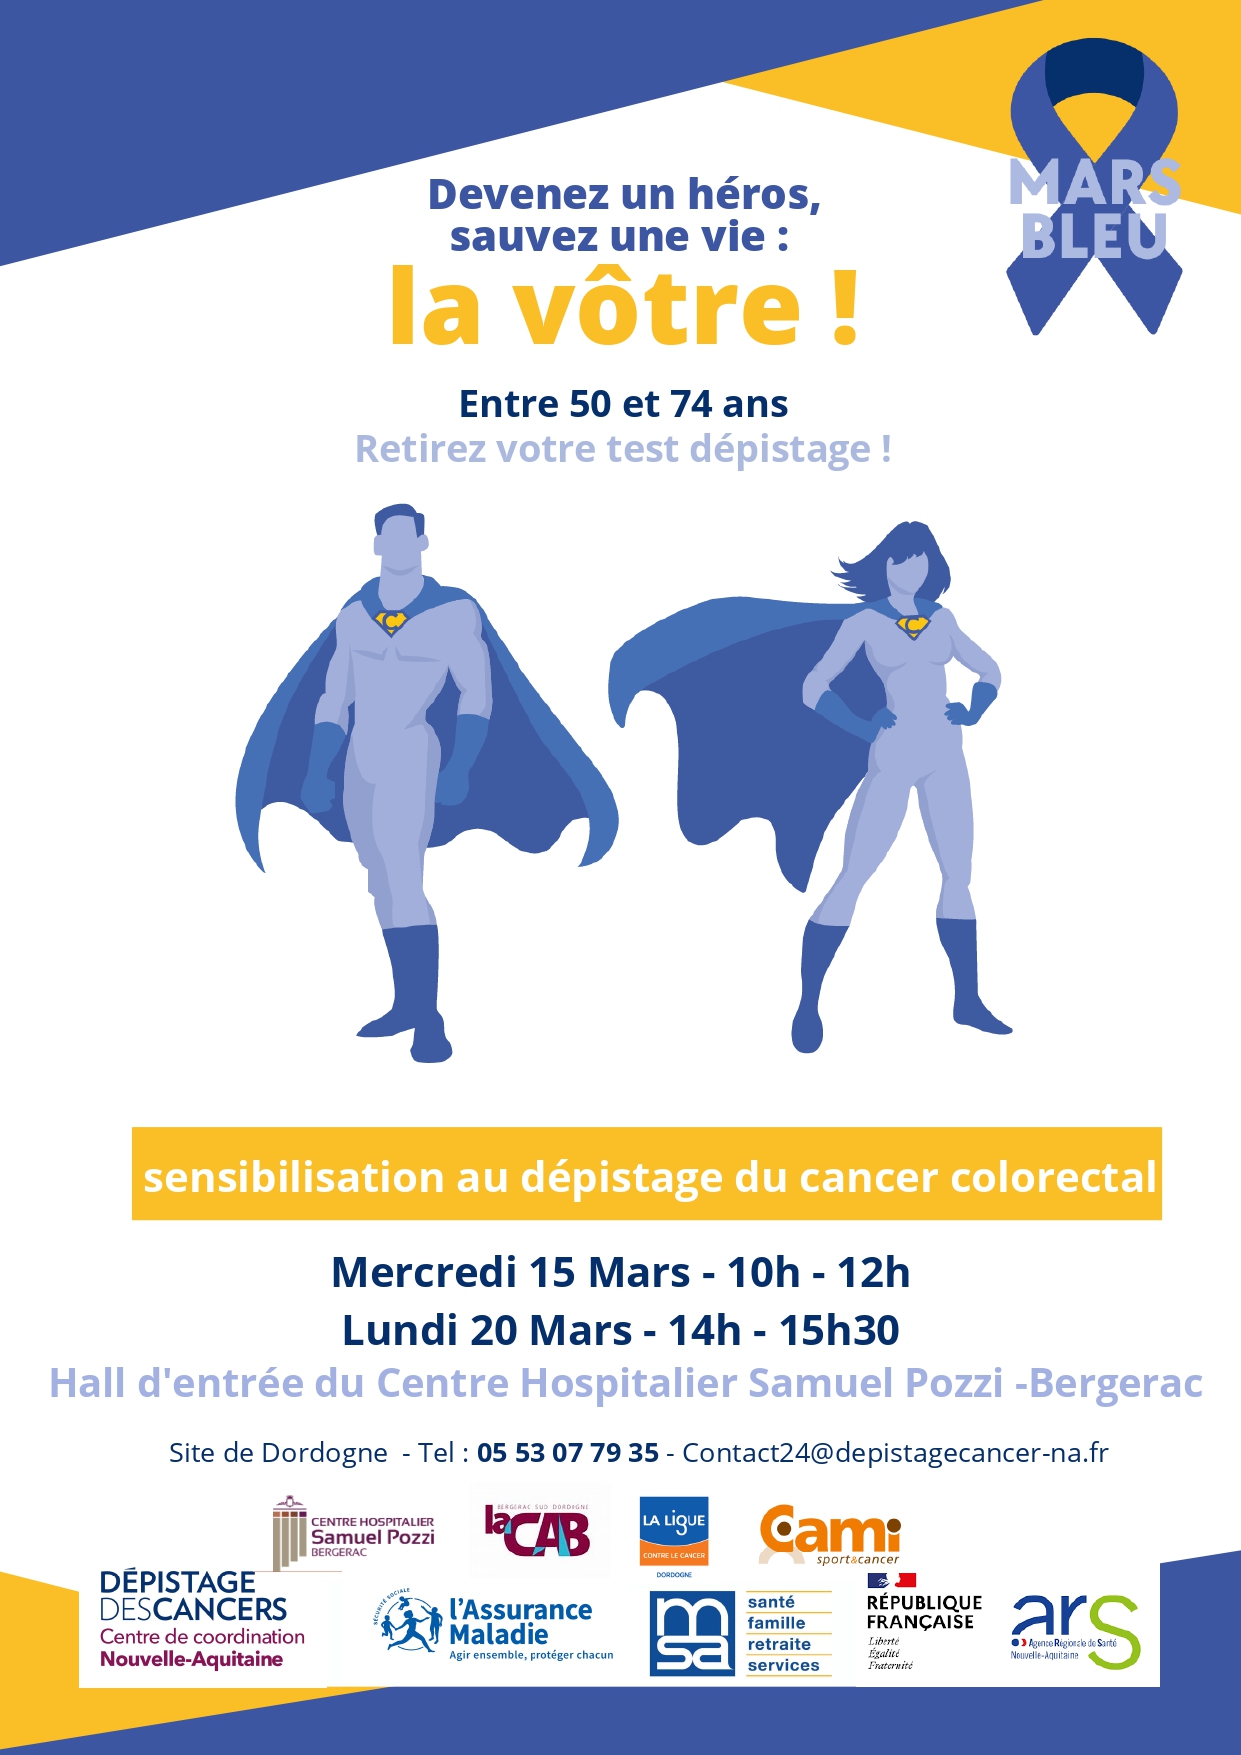 You are currently viewing Mars Bleu : La participation au dépistage du cancer colorectal trop faible en Dordogne